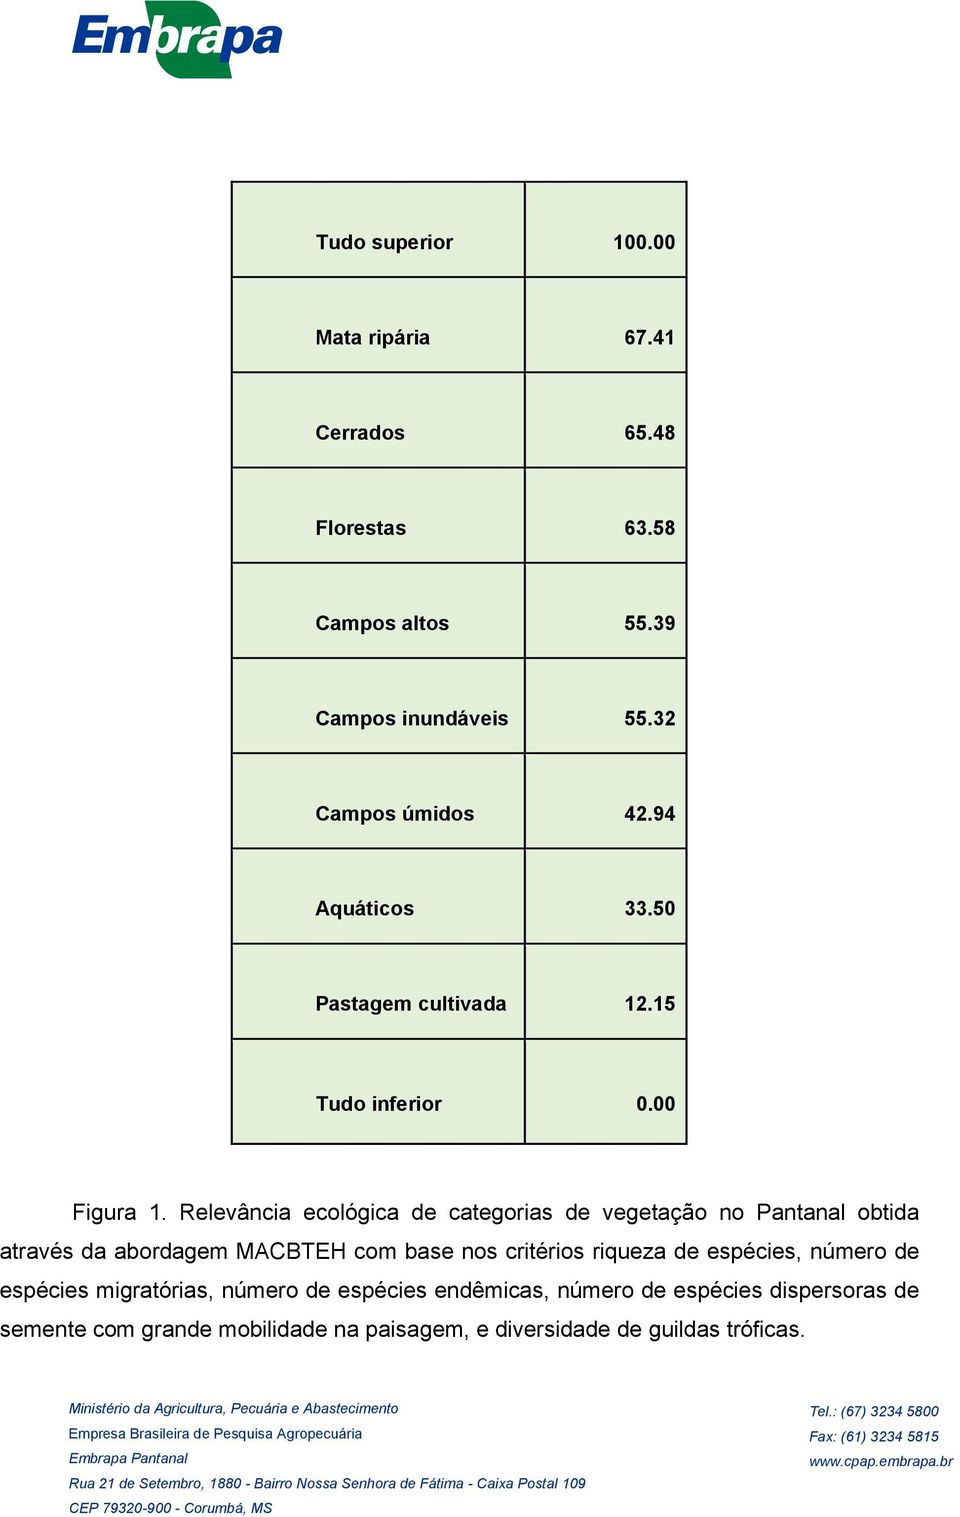 Relevância ecológica de categorias de vegetação no Pantanal obtida através da abordagem MACBTEH com base nos critérios riqueza de